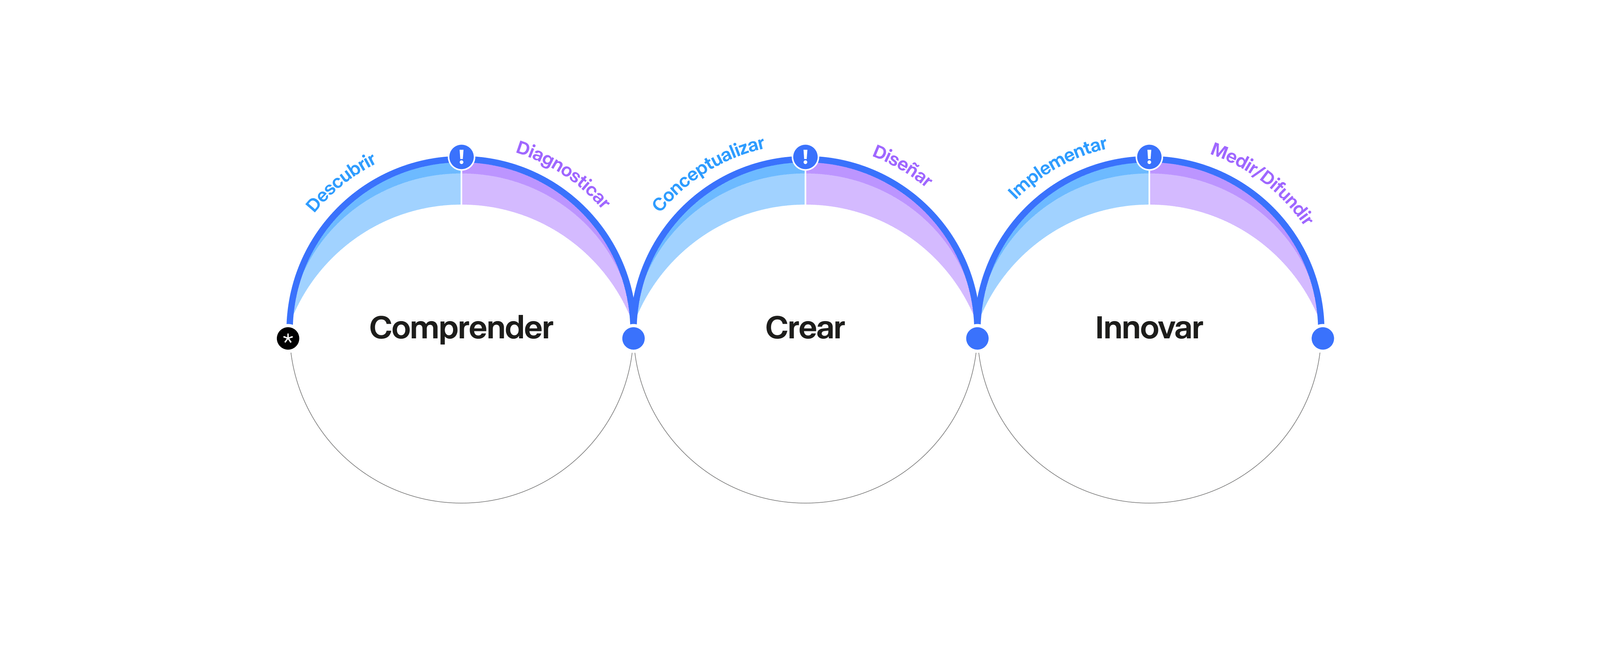 Diagrama metodología Sapiens: comprender - crear - innovar.